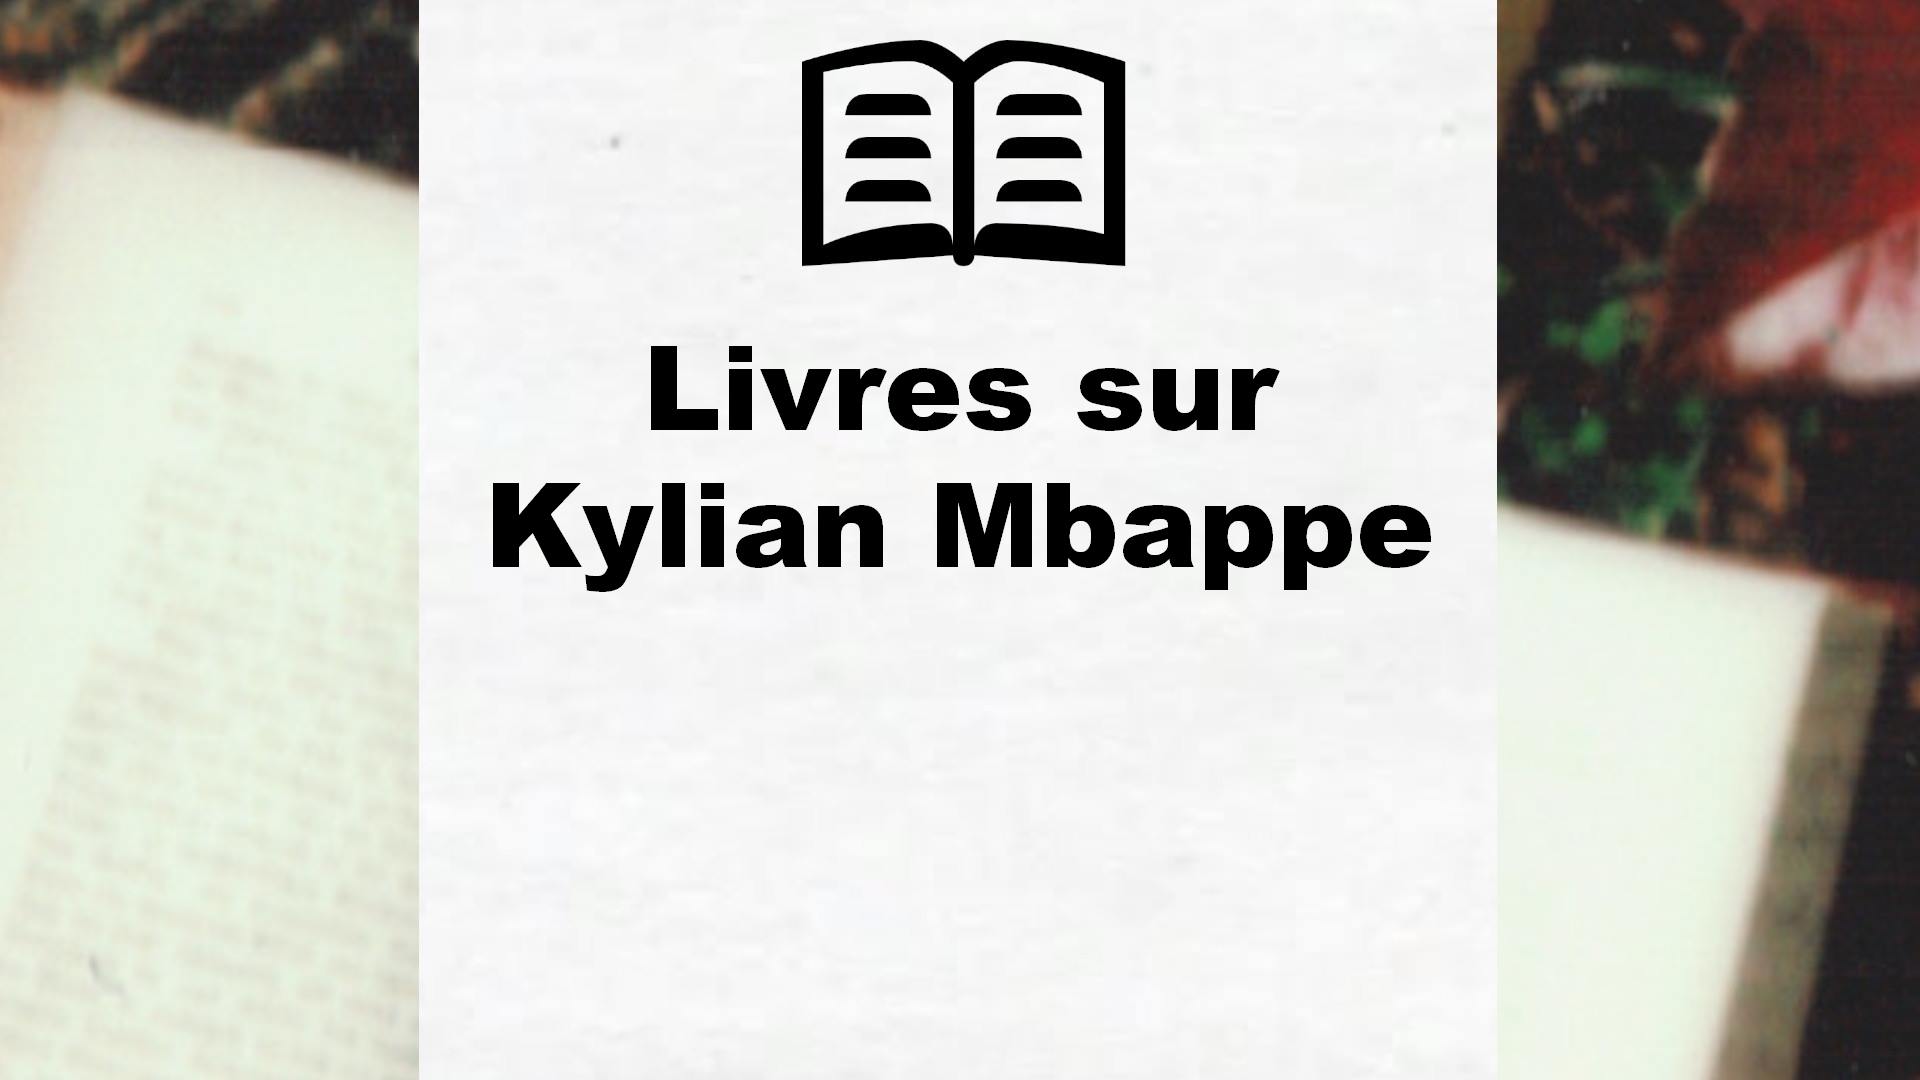 Livres sur Kylian Mbappe